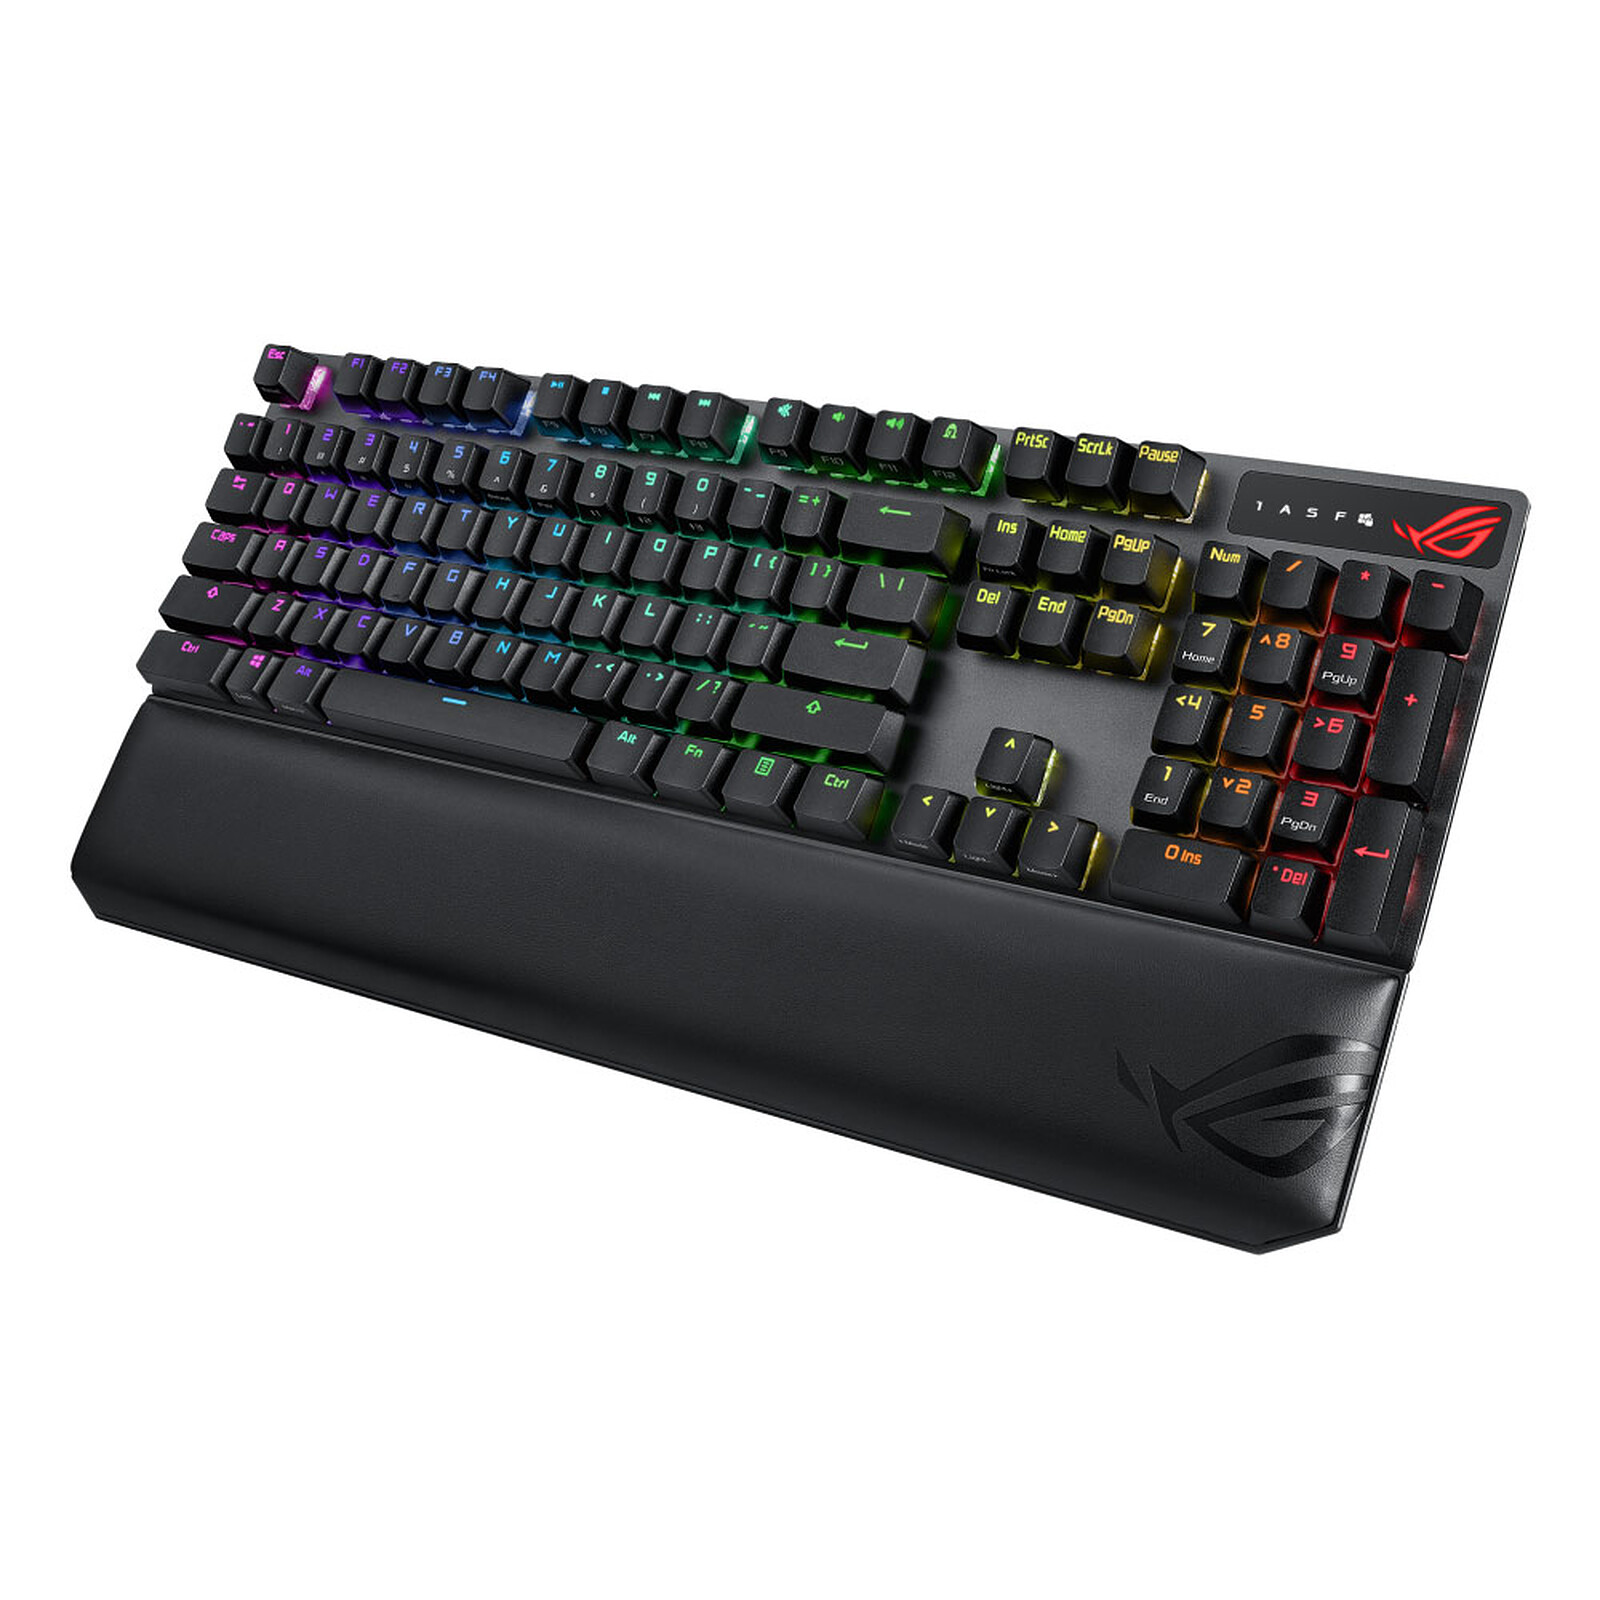 Buy ROG Strix Scope NX TKL Deluxe, Keyboards, Keyboards